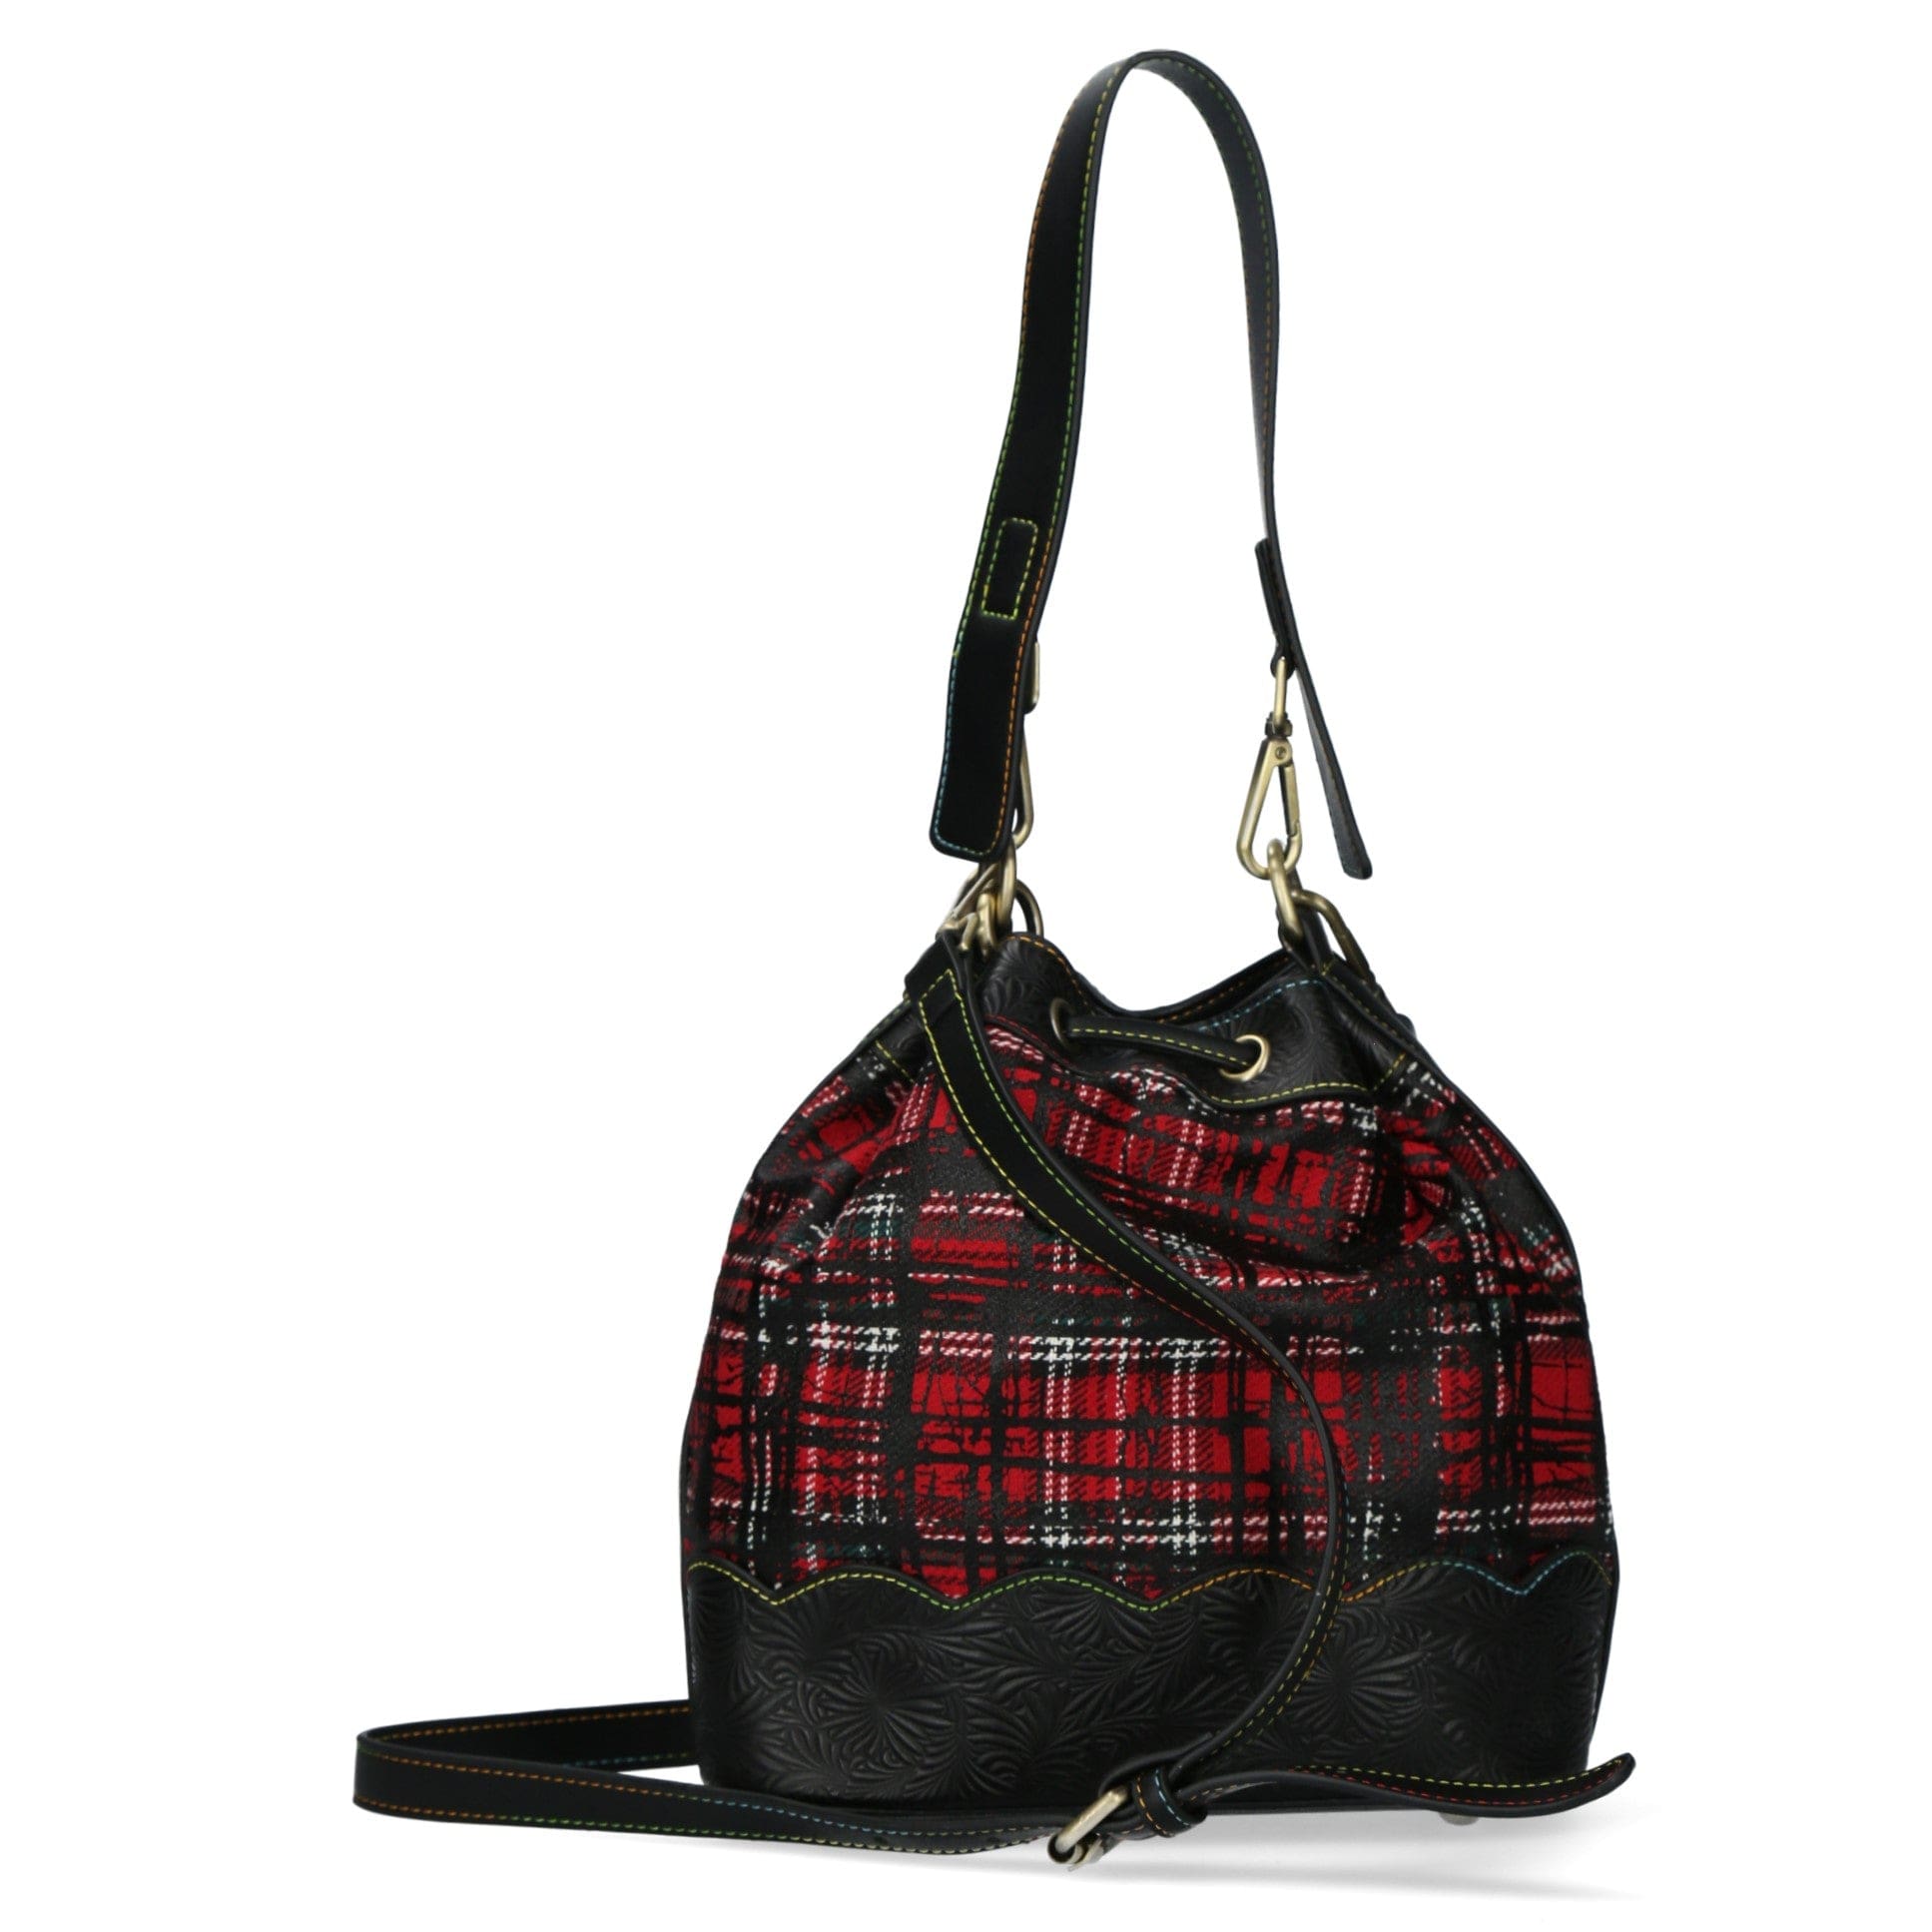 Leather Handbag 4811A - Bag